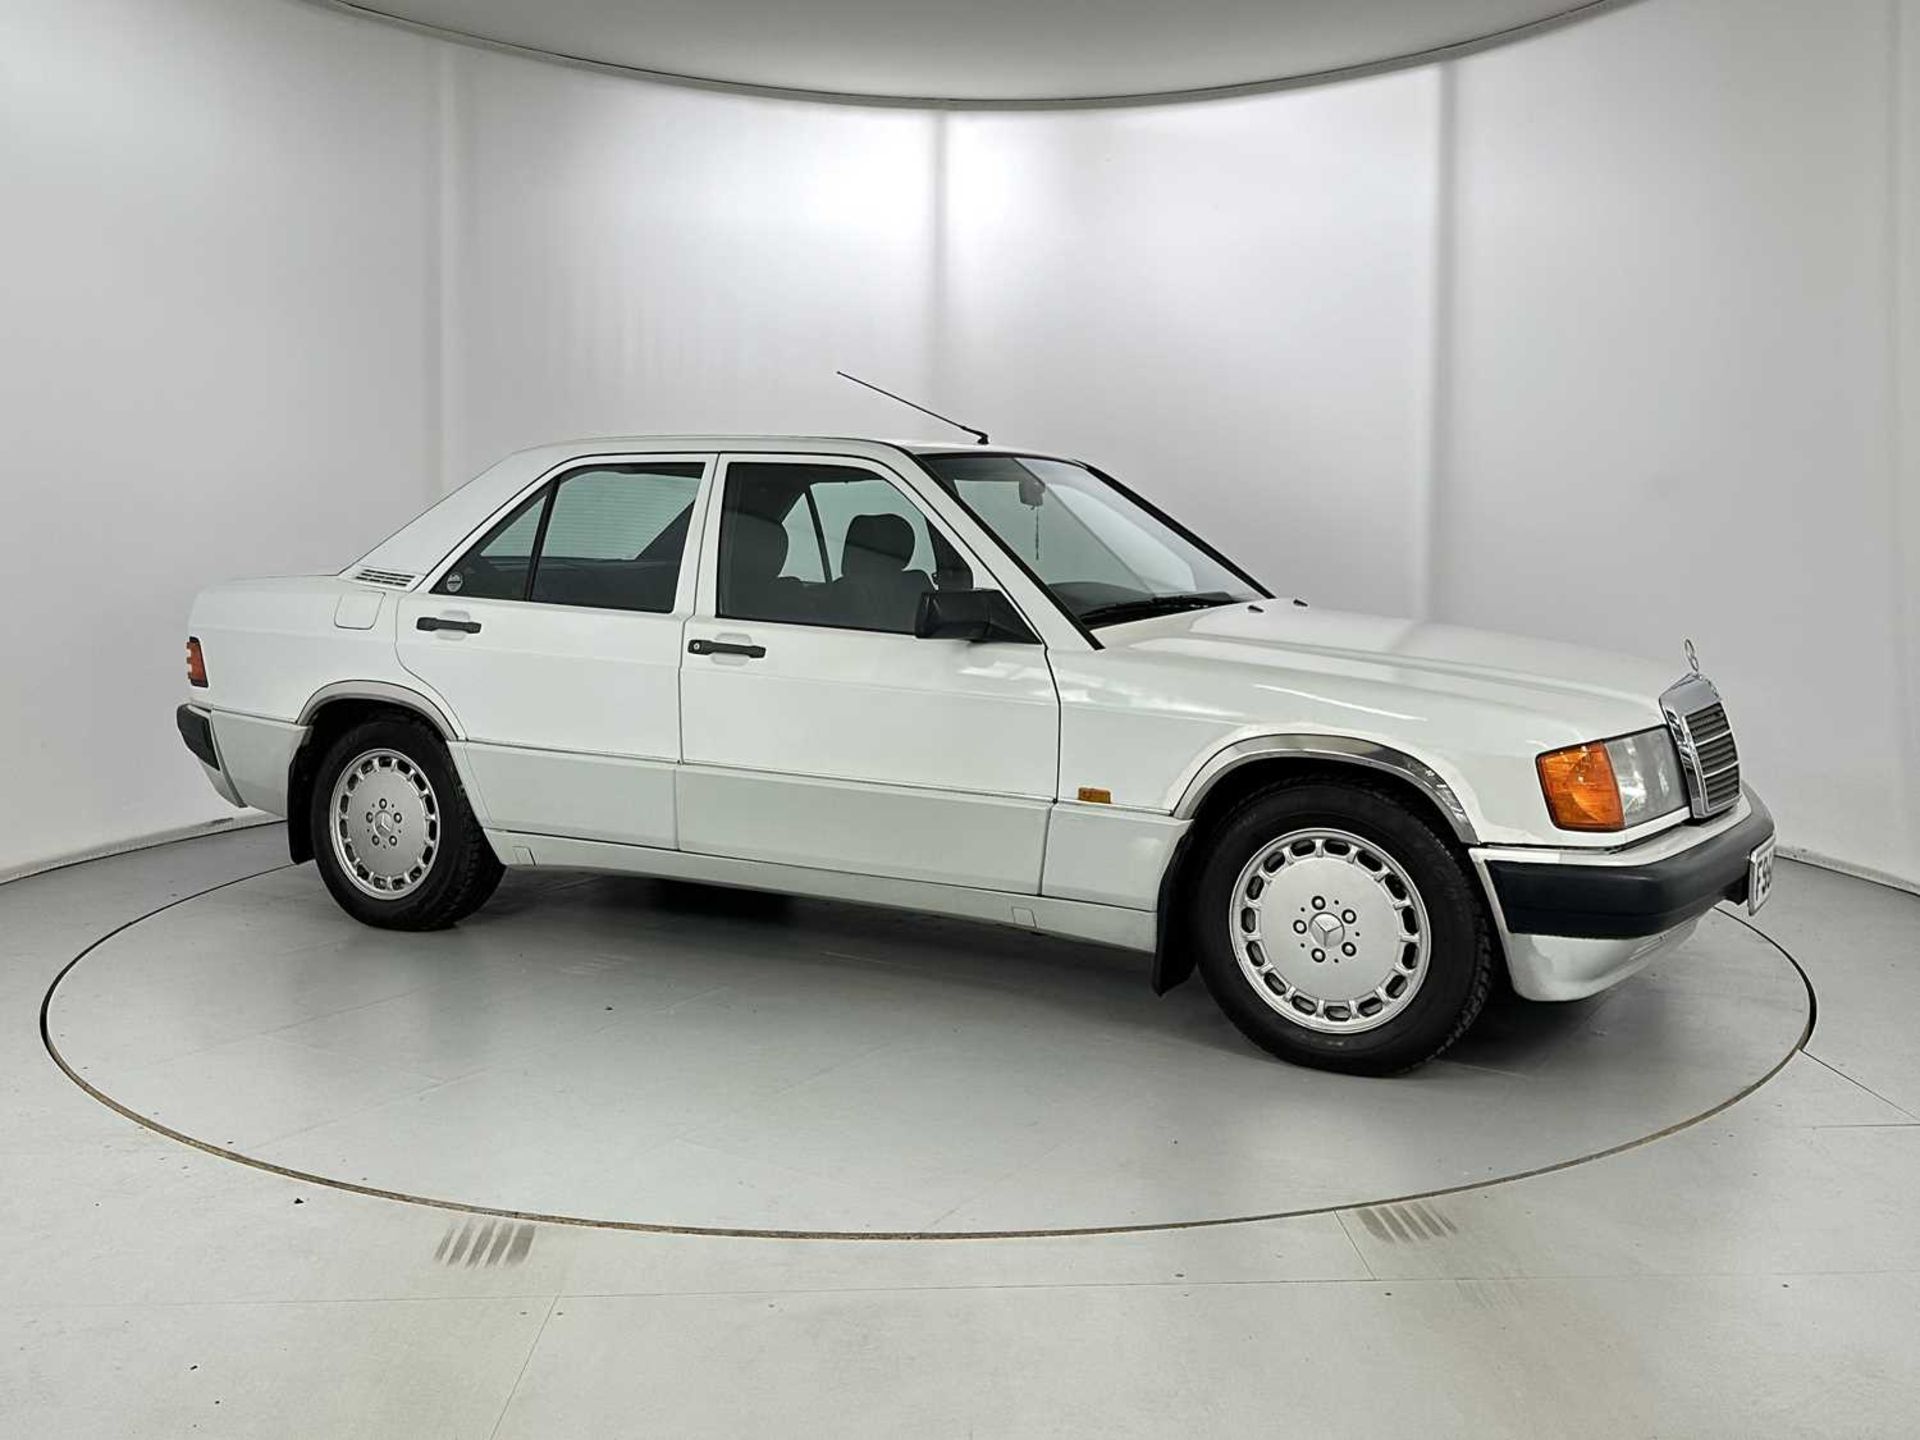 1989 Mercedes-Benz 190E - Image 12 of 34